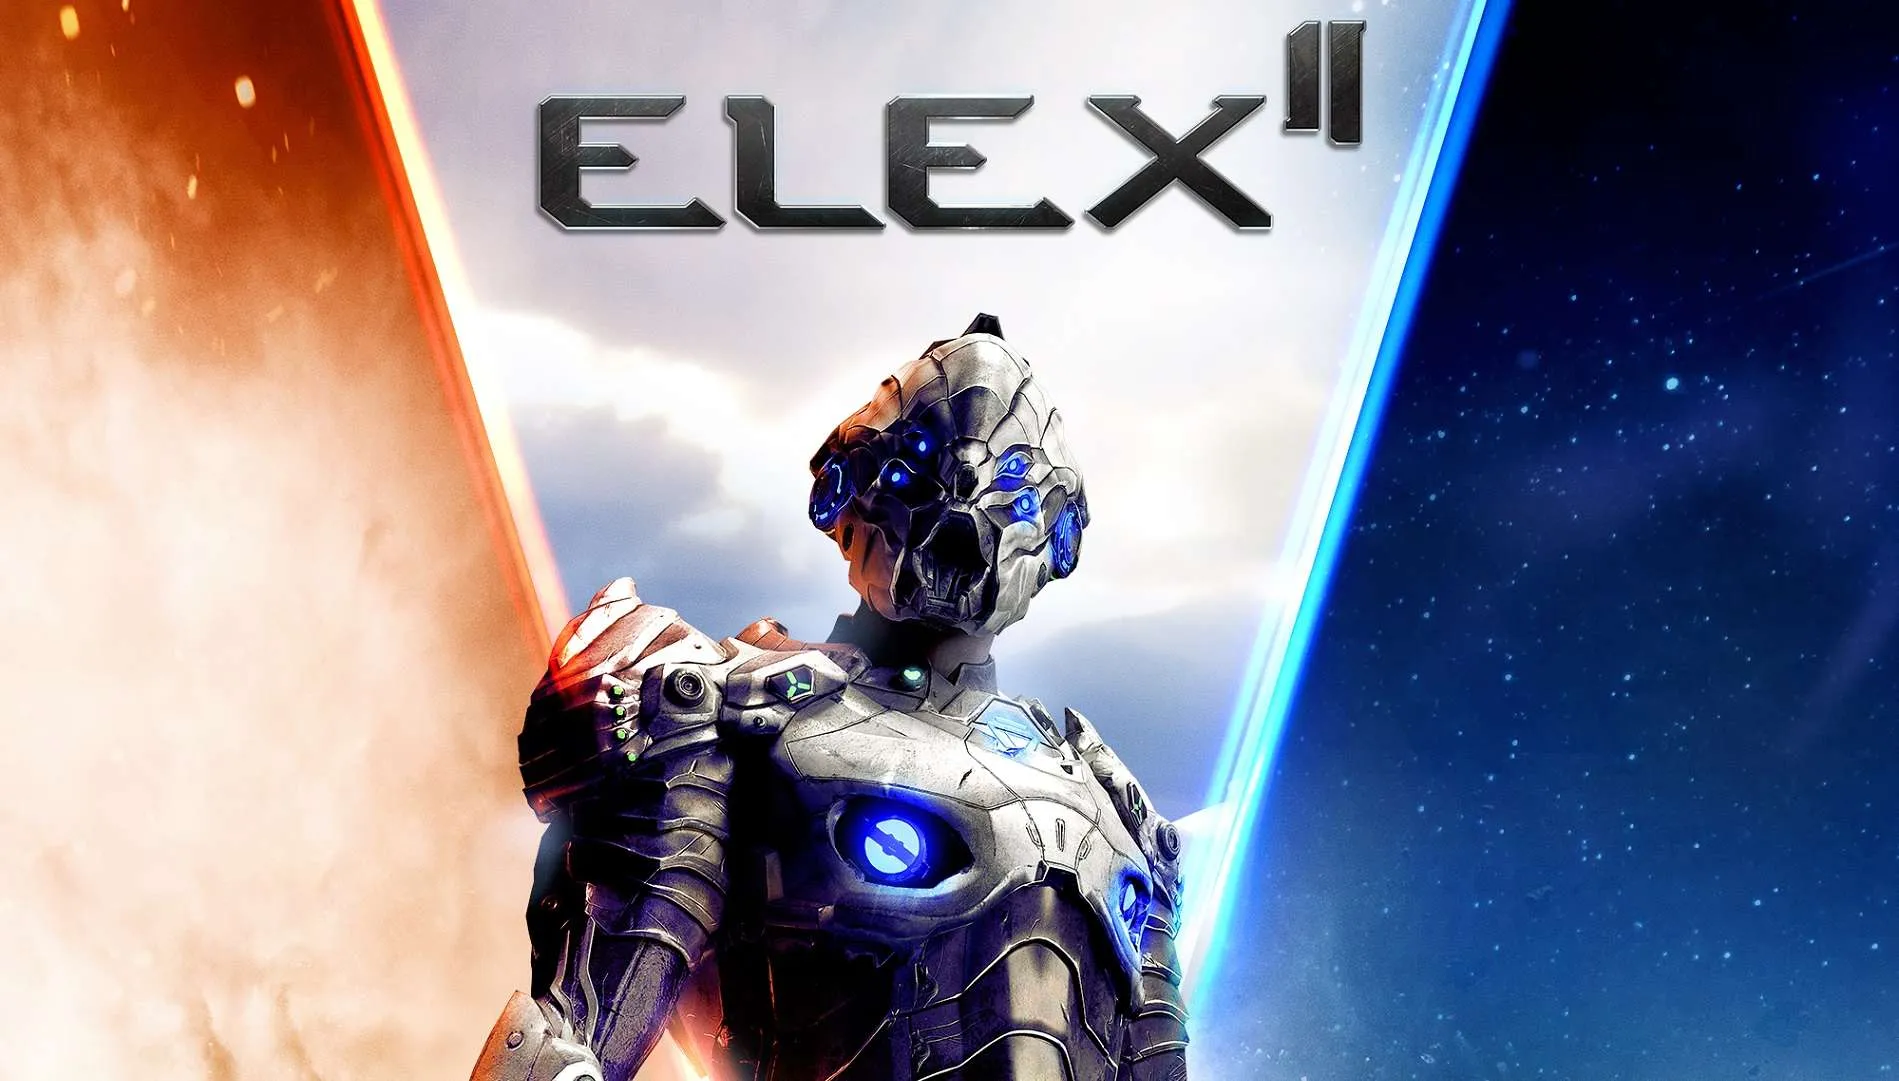 Elex II